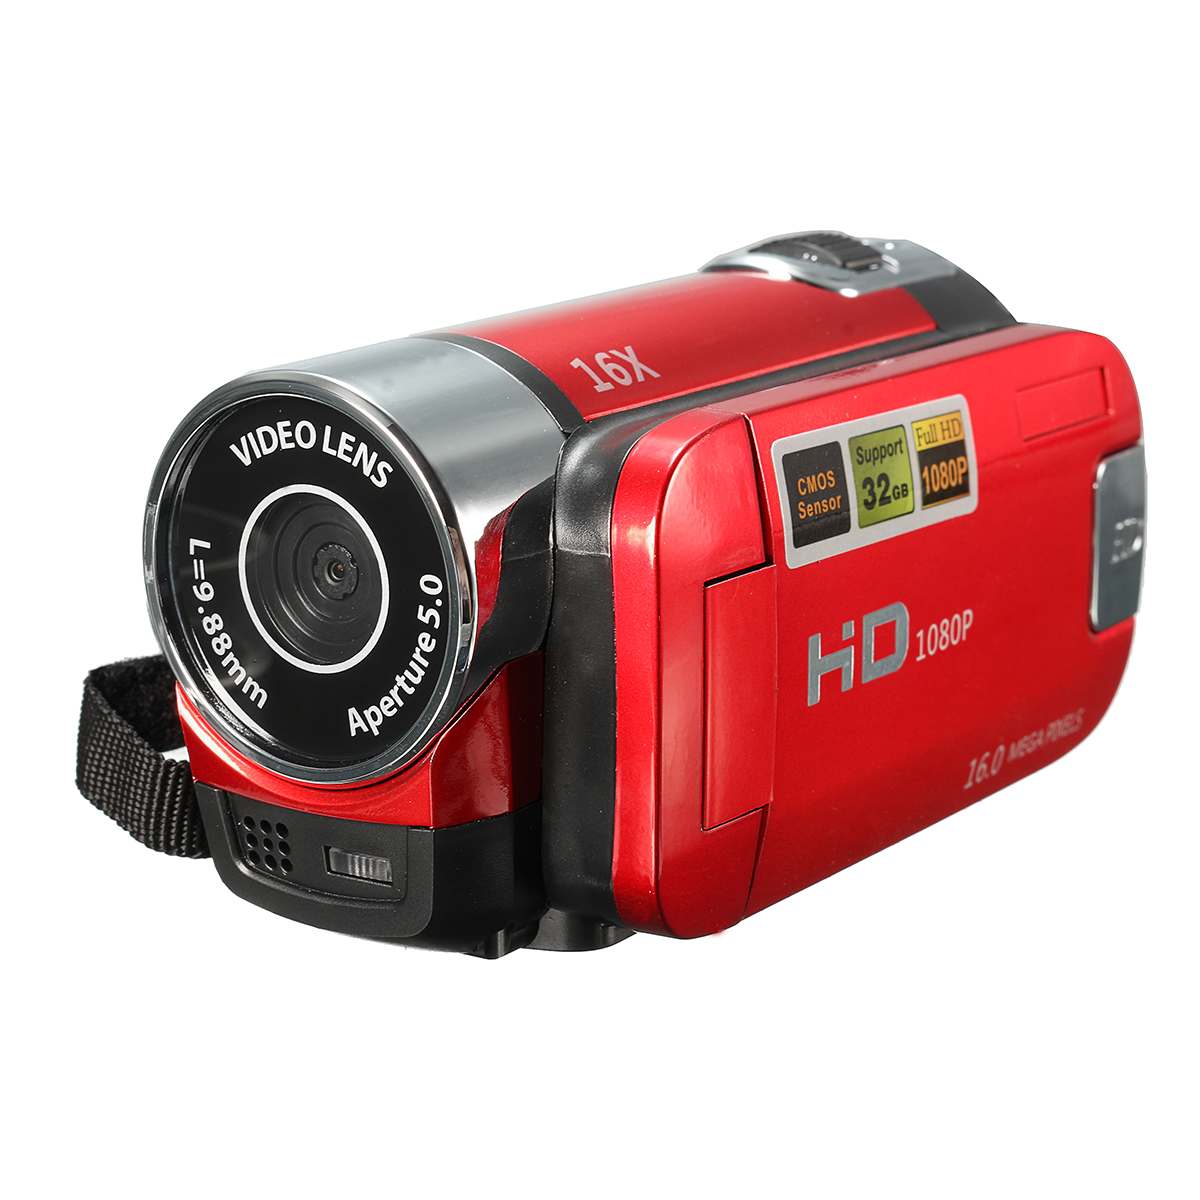 ดิจิตอลกล้องวิดีโอ กล้องวีดีโอกล้องถ่ายรูป ระบบตัวเลขความละเอียดสูงกล้องถ่ายวิดีโอกล้อง DV 16X Video Camera 16 Million Pixels HD 1080P Digitale Video Camcorder DV 16MP 2.7